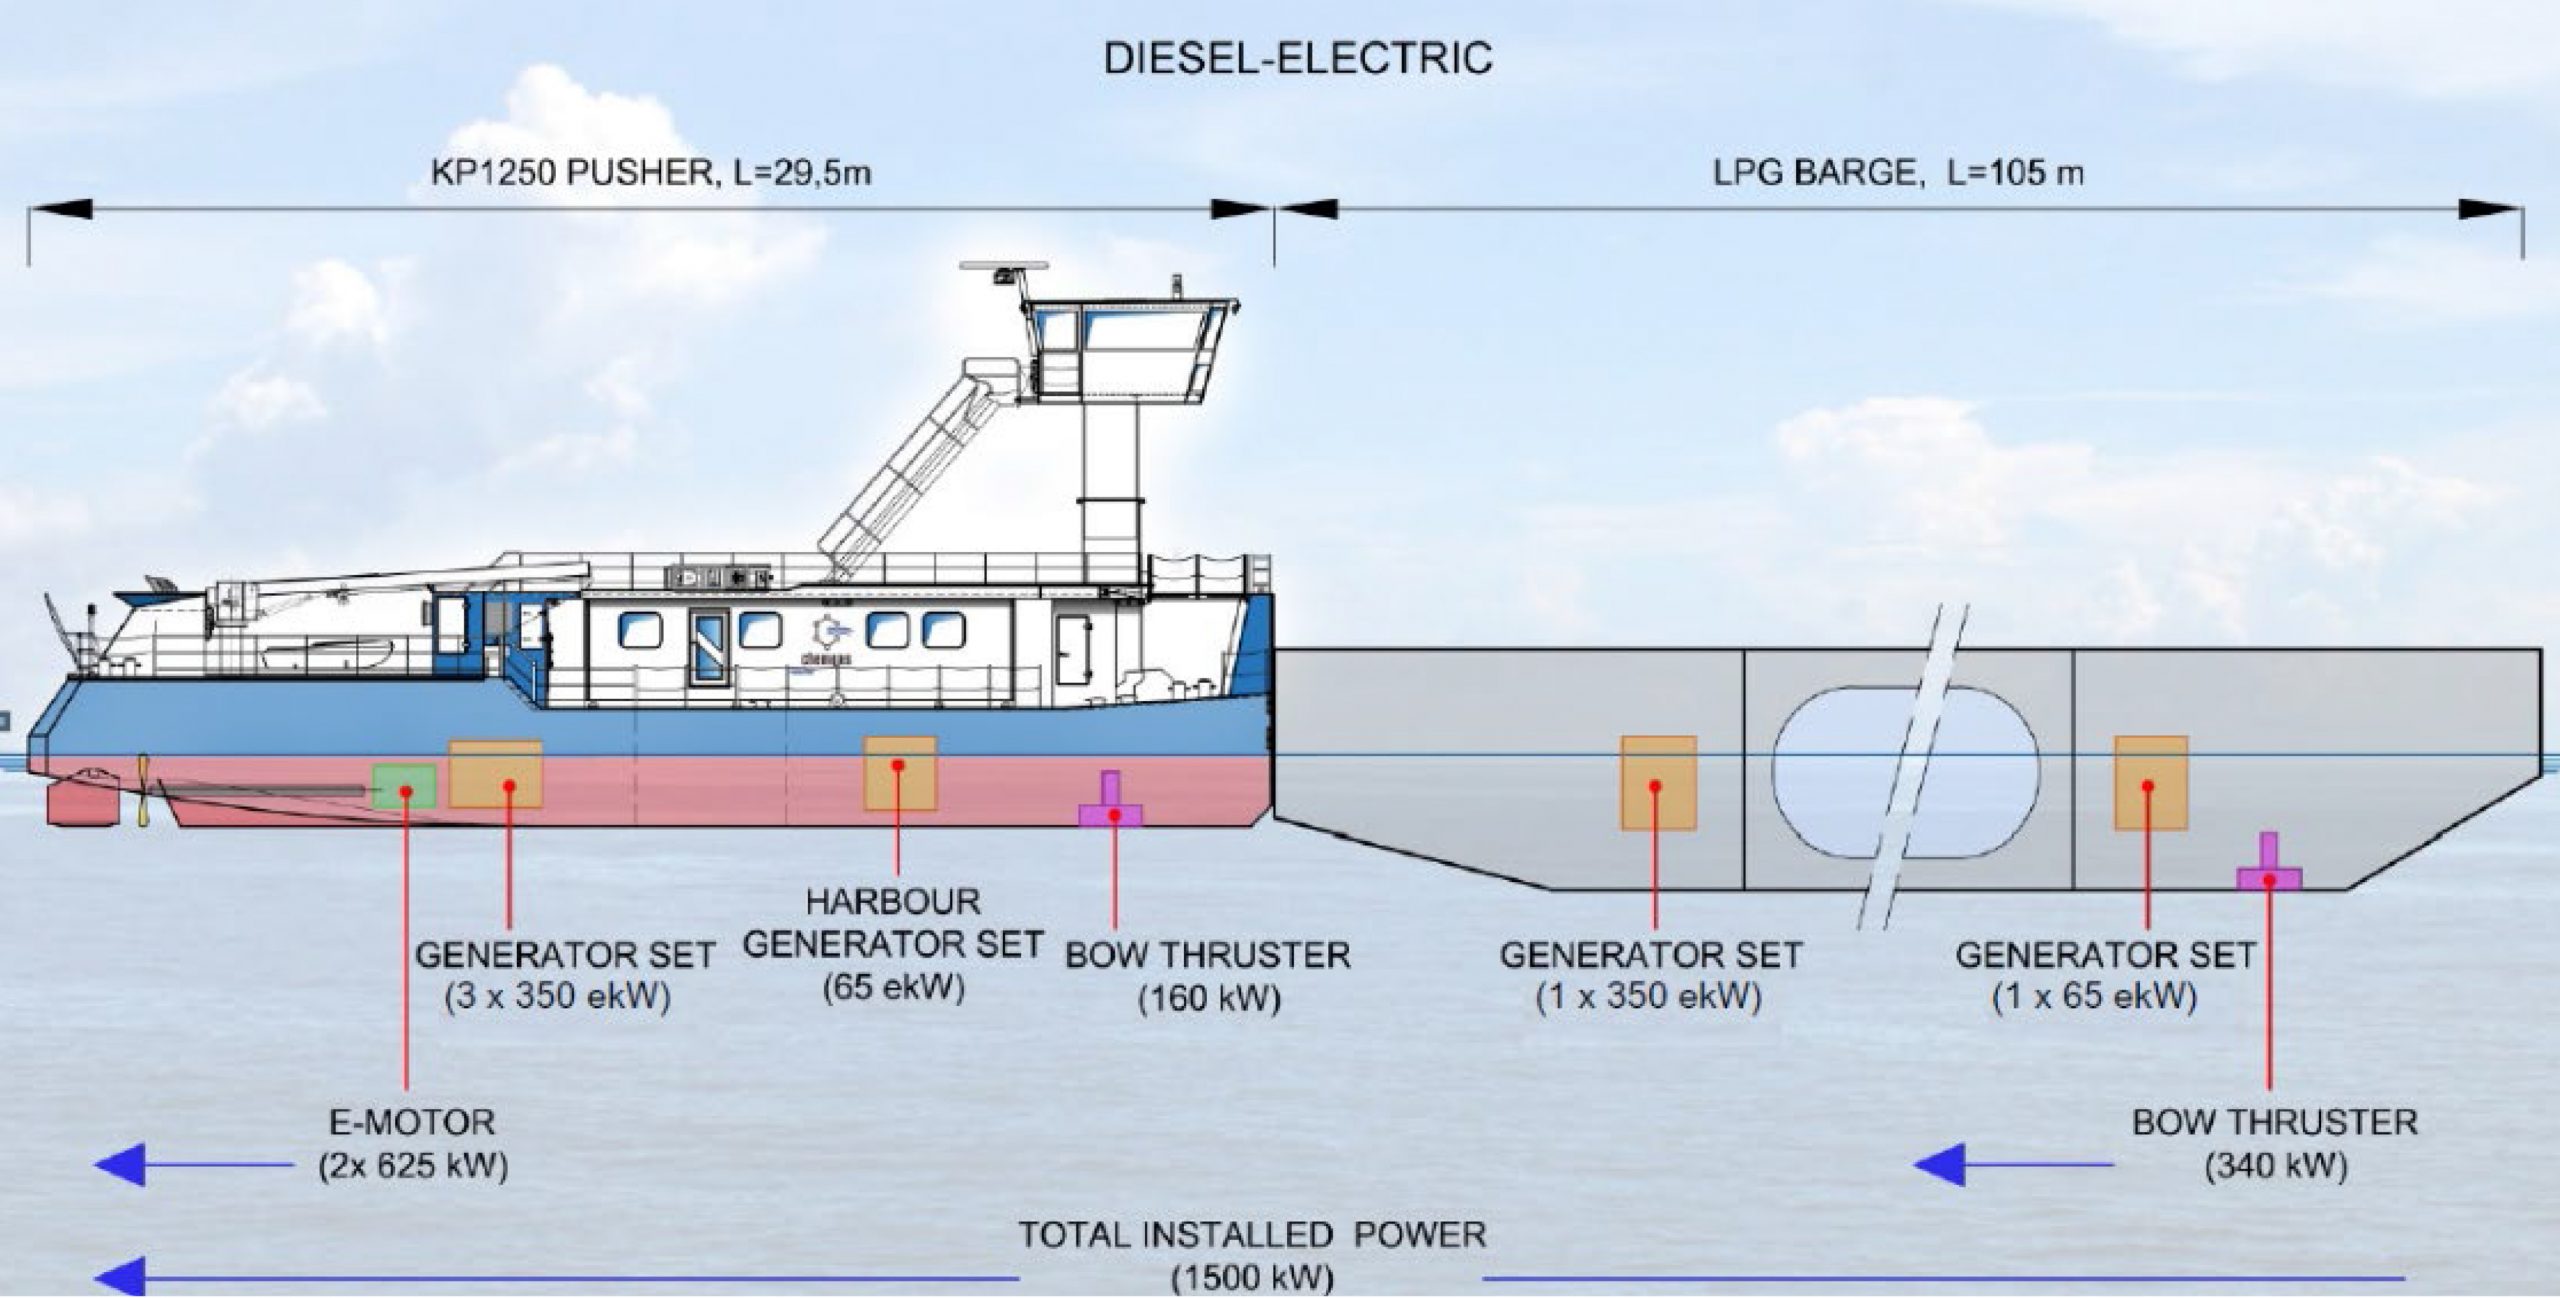 Van de vier Caterpillar C18 generatorsets staan er drie aan boord van de duwboot opgesteld, de andere set staat op de duwbak. (Illustratie Barkmeijer Shipyards)